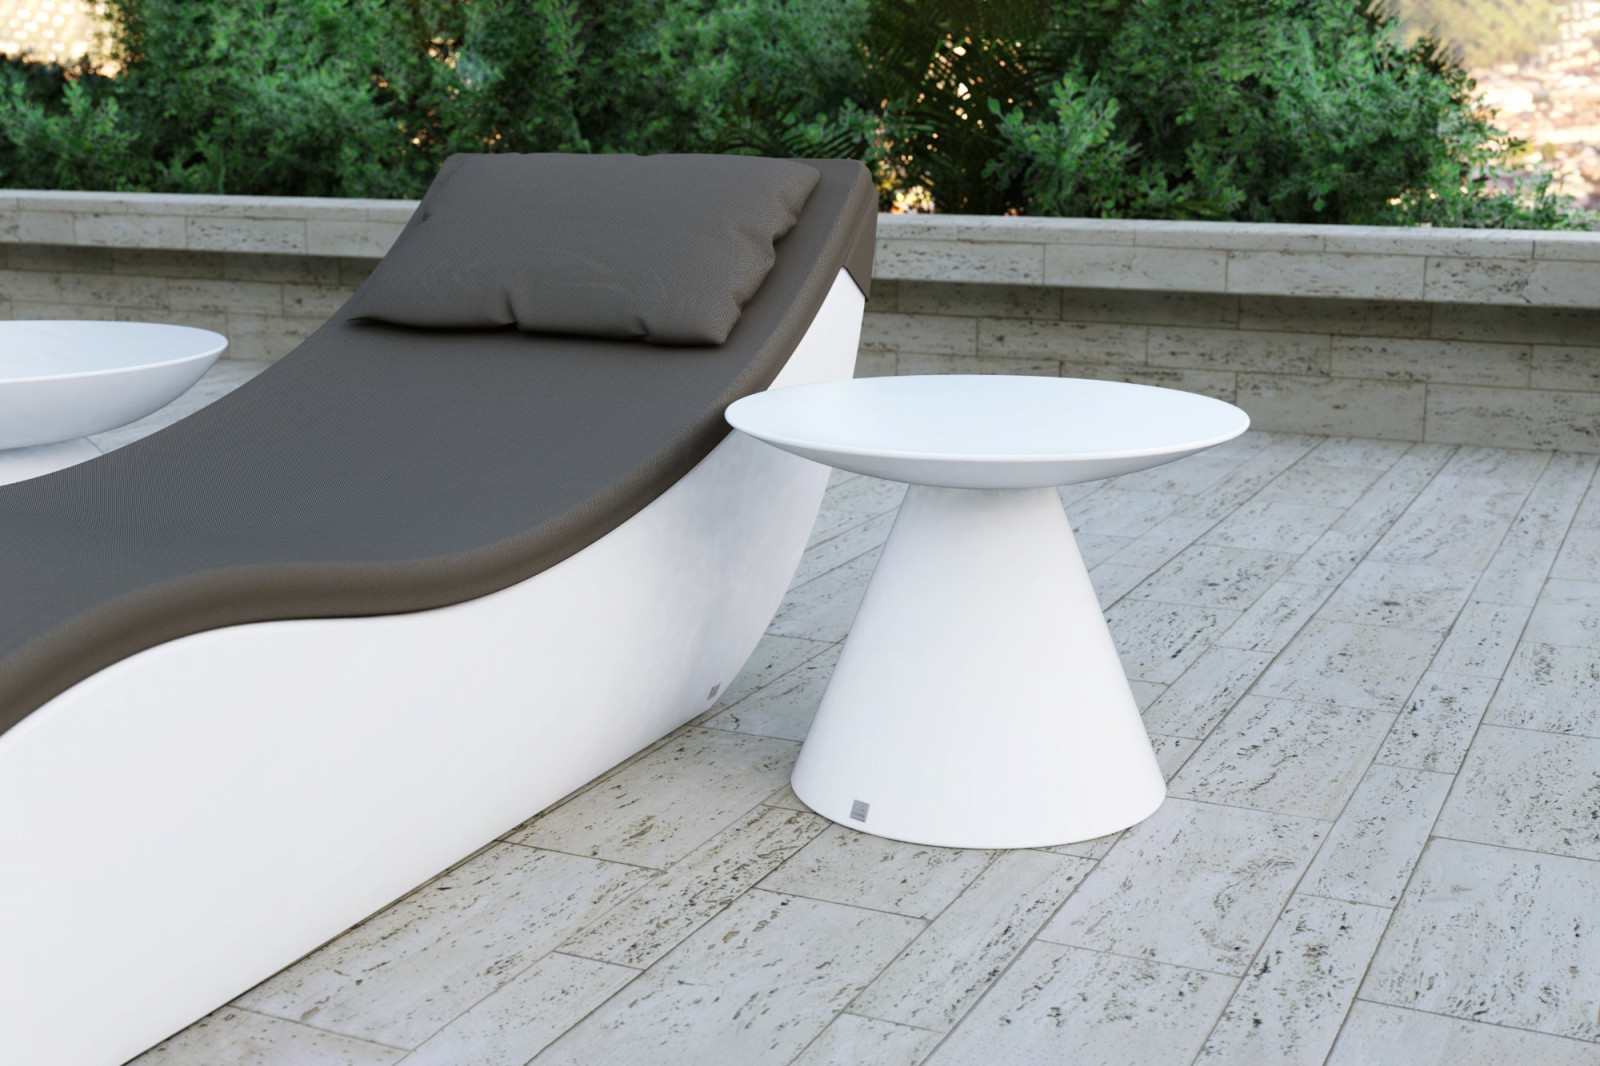 coffee-tall-table-outdoor-terrace-garden-pool-elegant-white-matte-oceano-gansk-0-2644-1600-1400-100